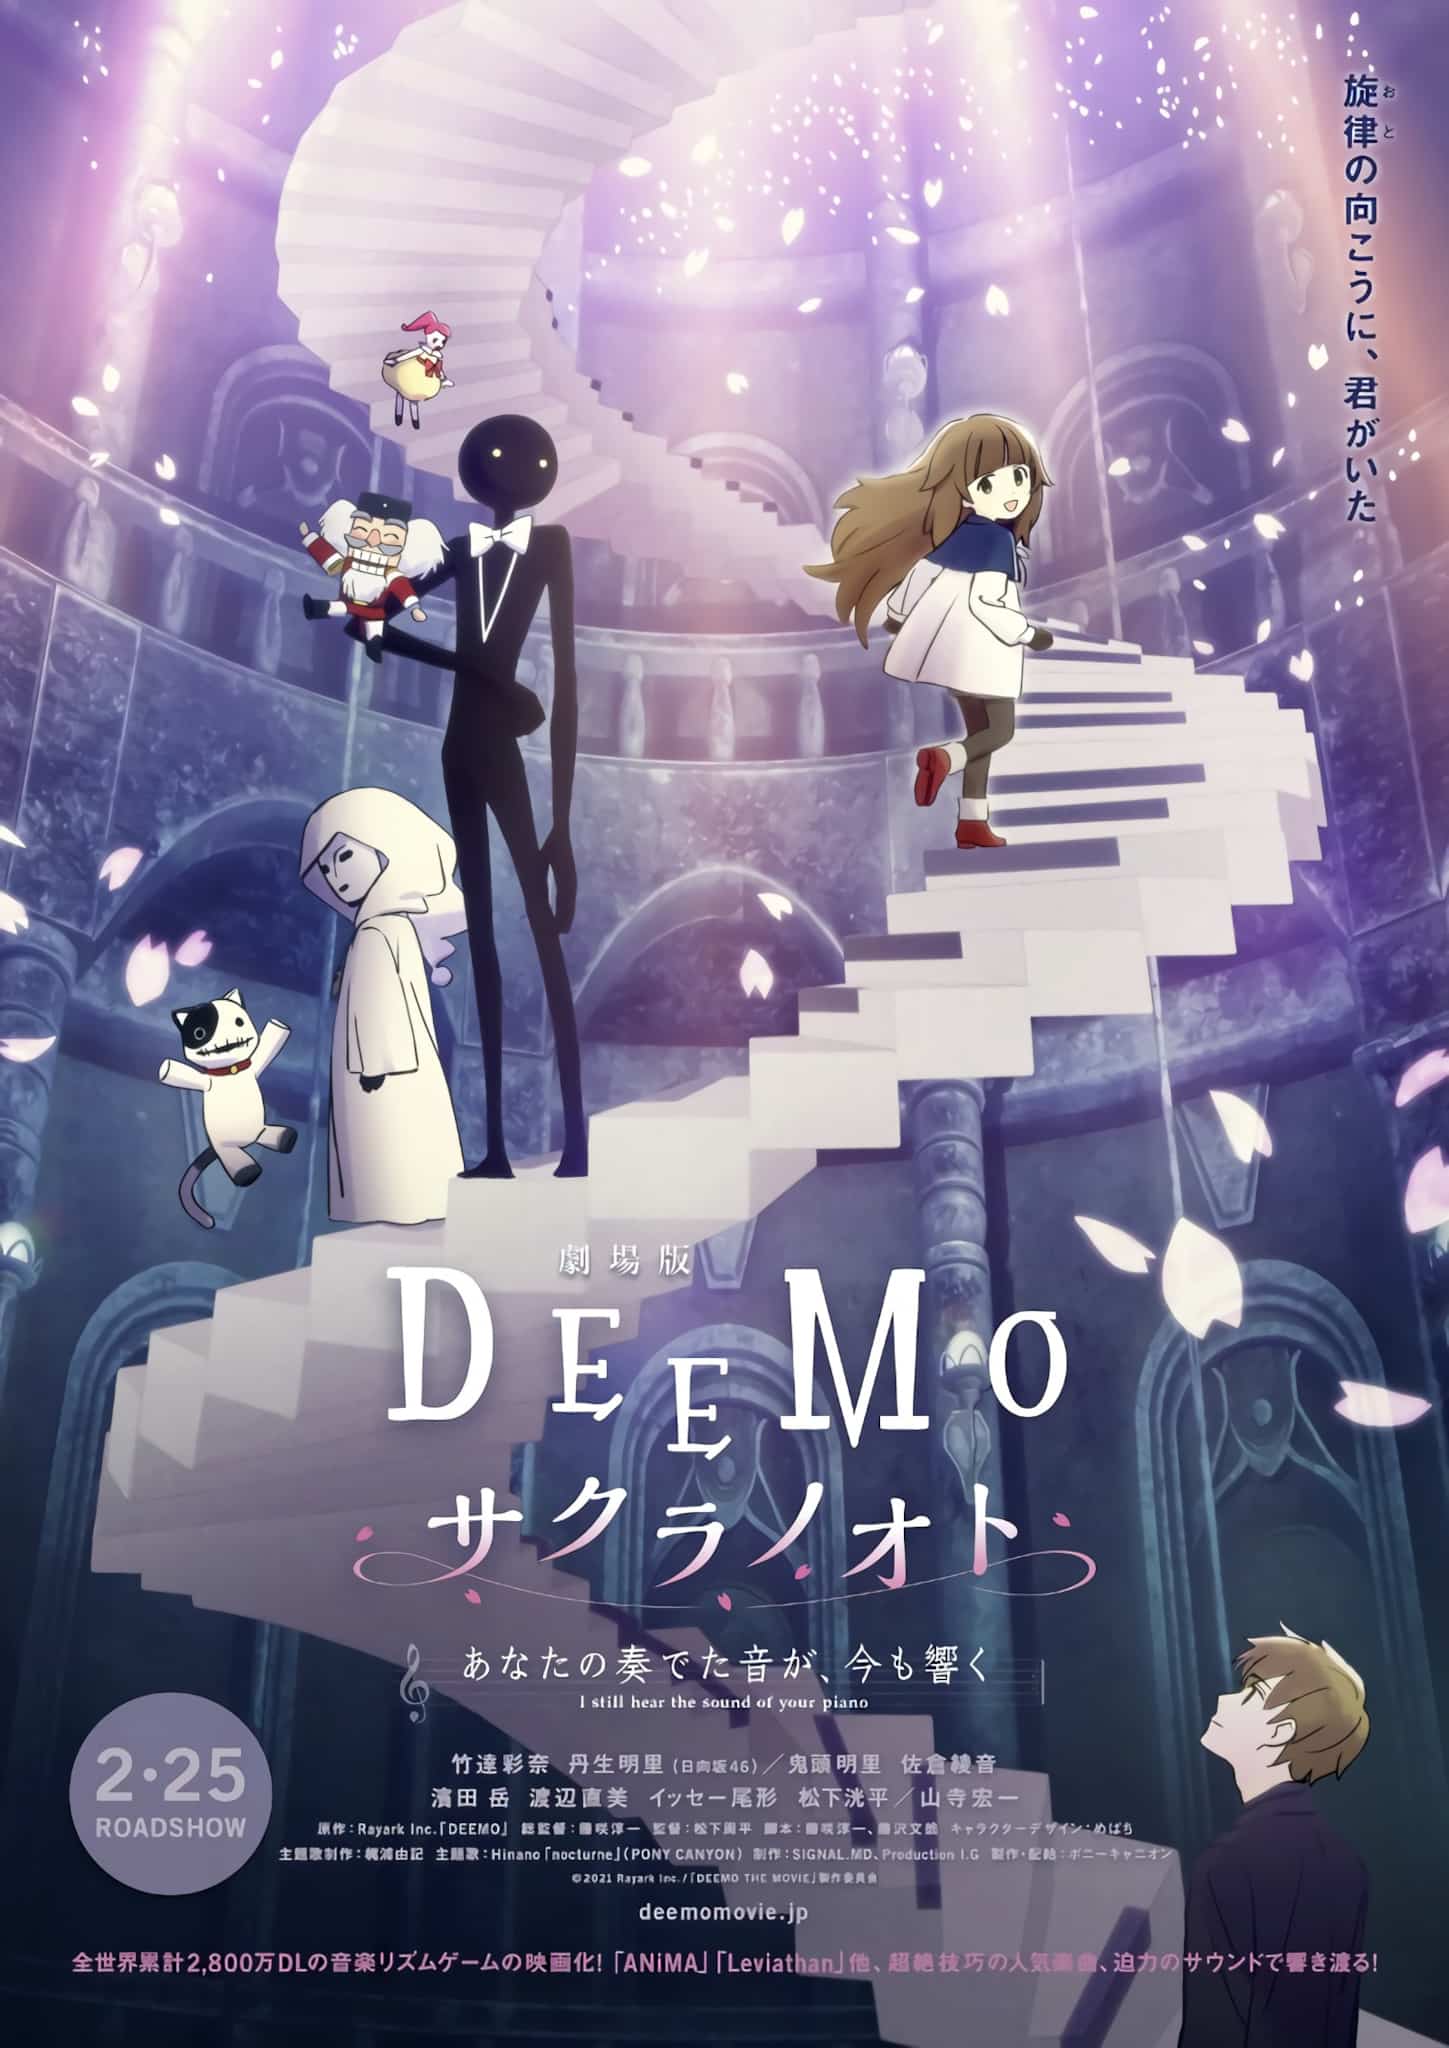 Nouveau trailer pour le film Deemo : Memorial Keys